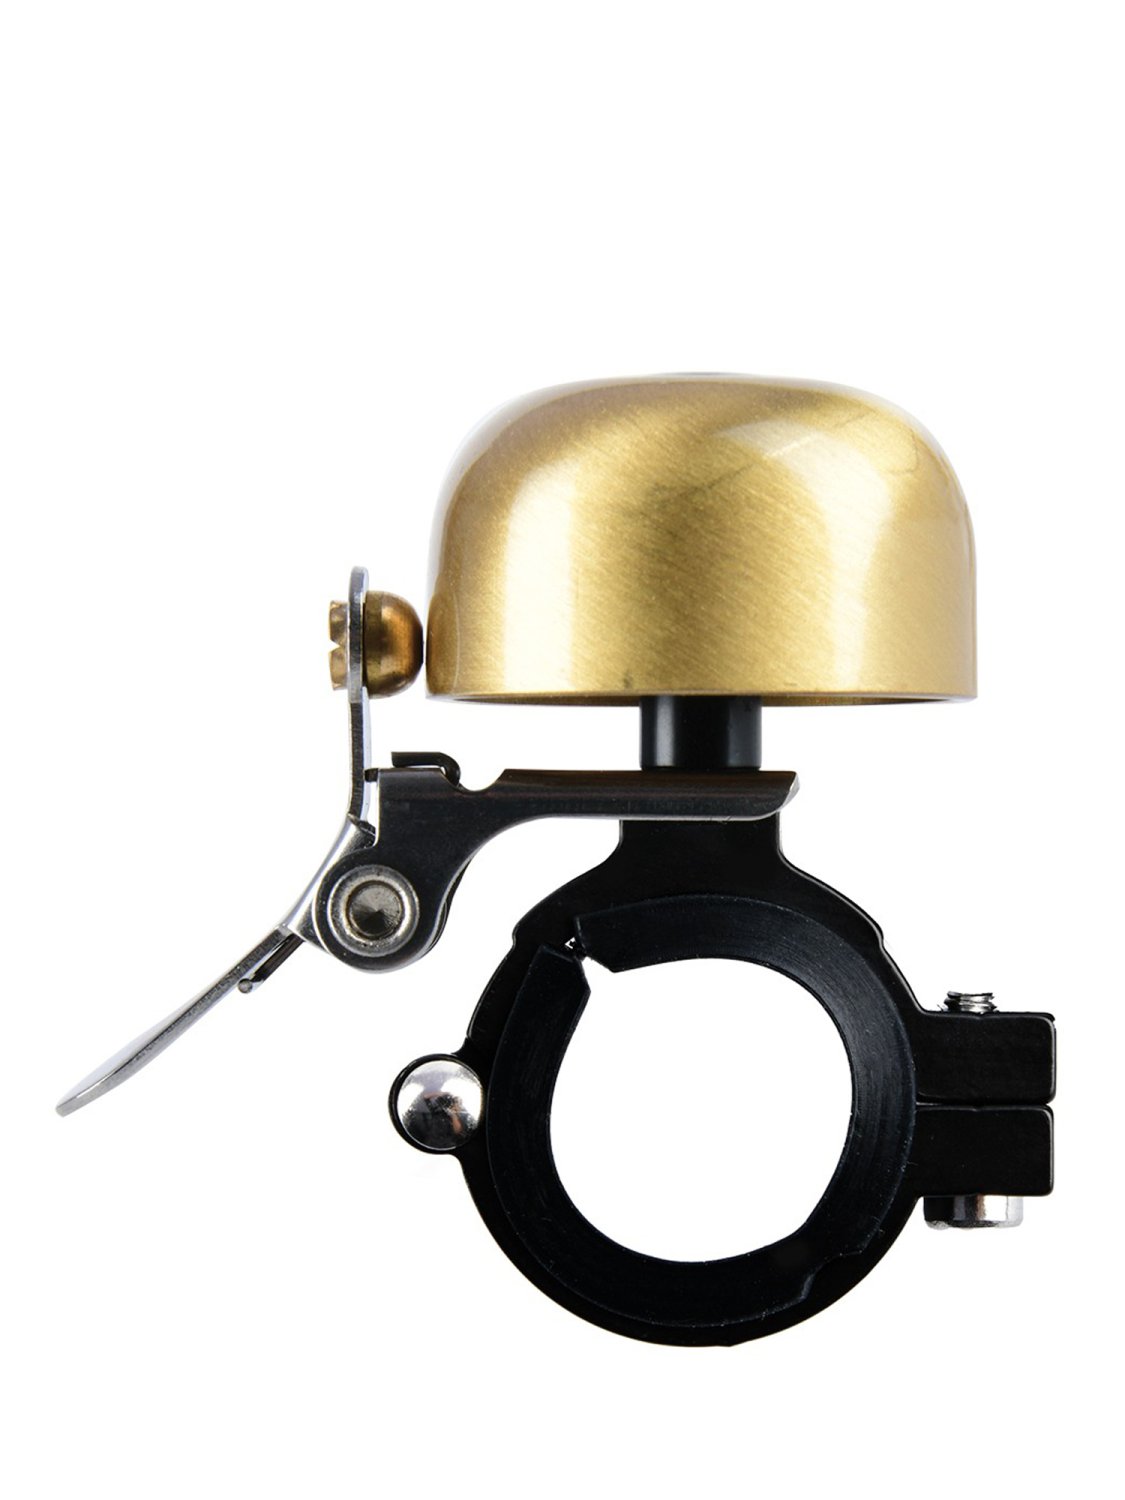 Звонок велосипедный Oxford Mini Ping Brass Bell Gold б/р, BE157G звонок велосипедный bbb bike bell noisy brass glossy silver bbb 17